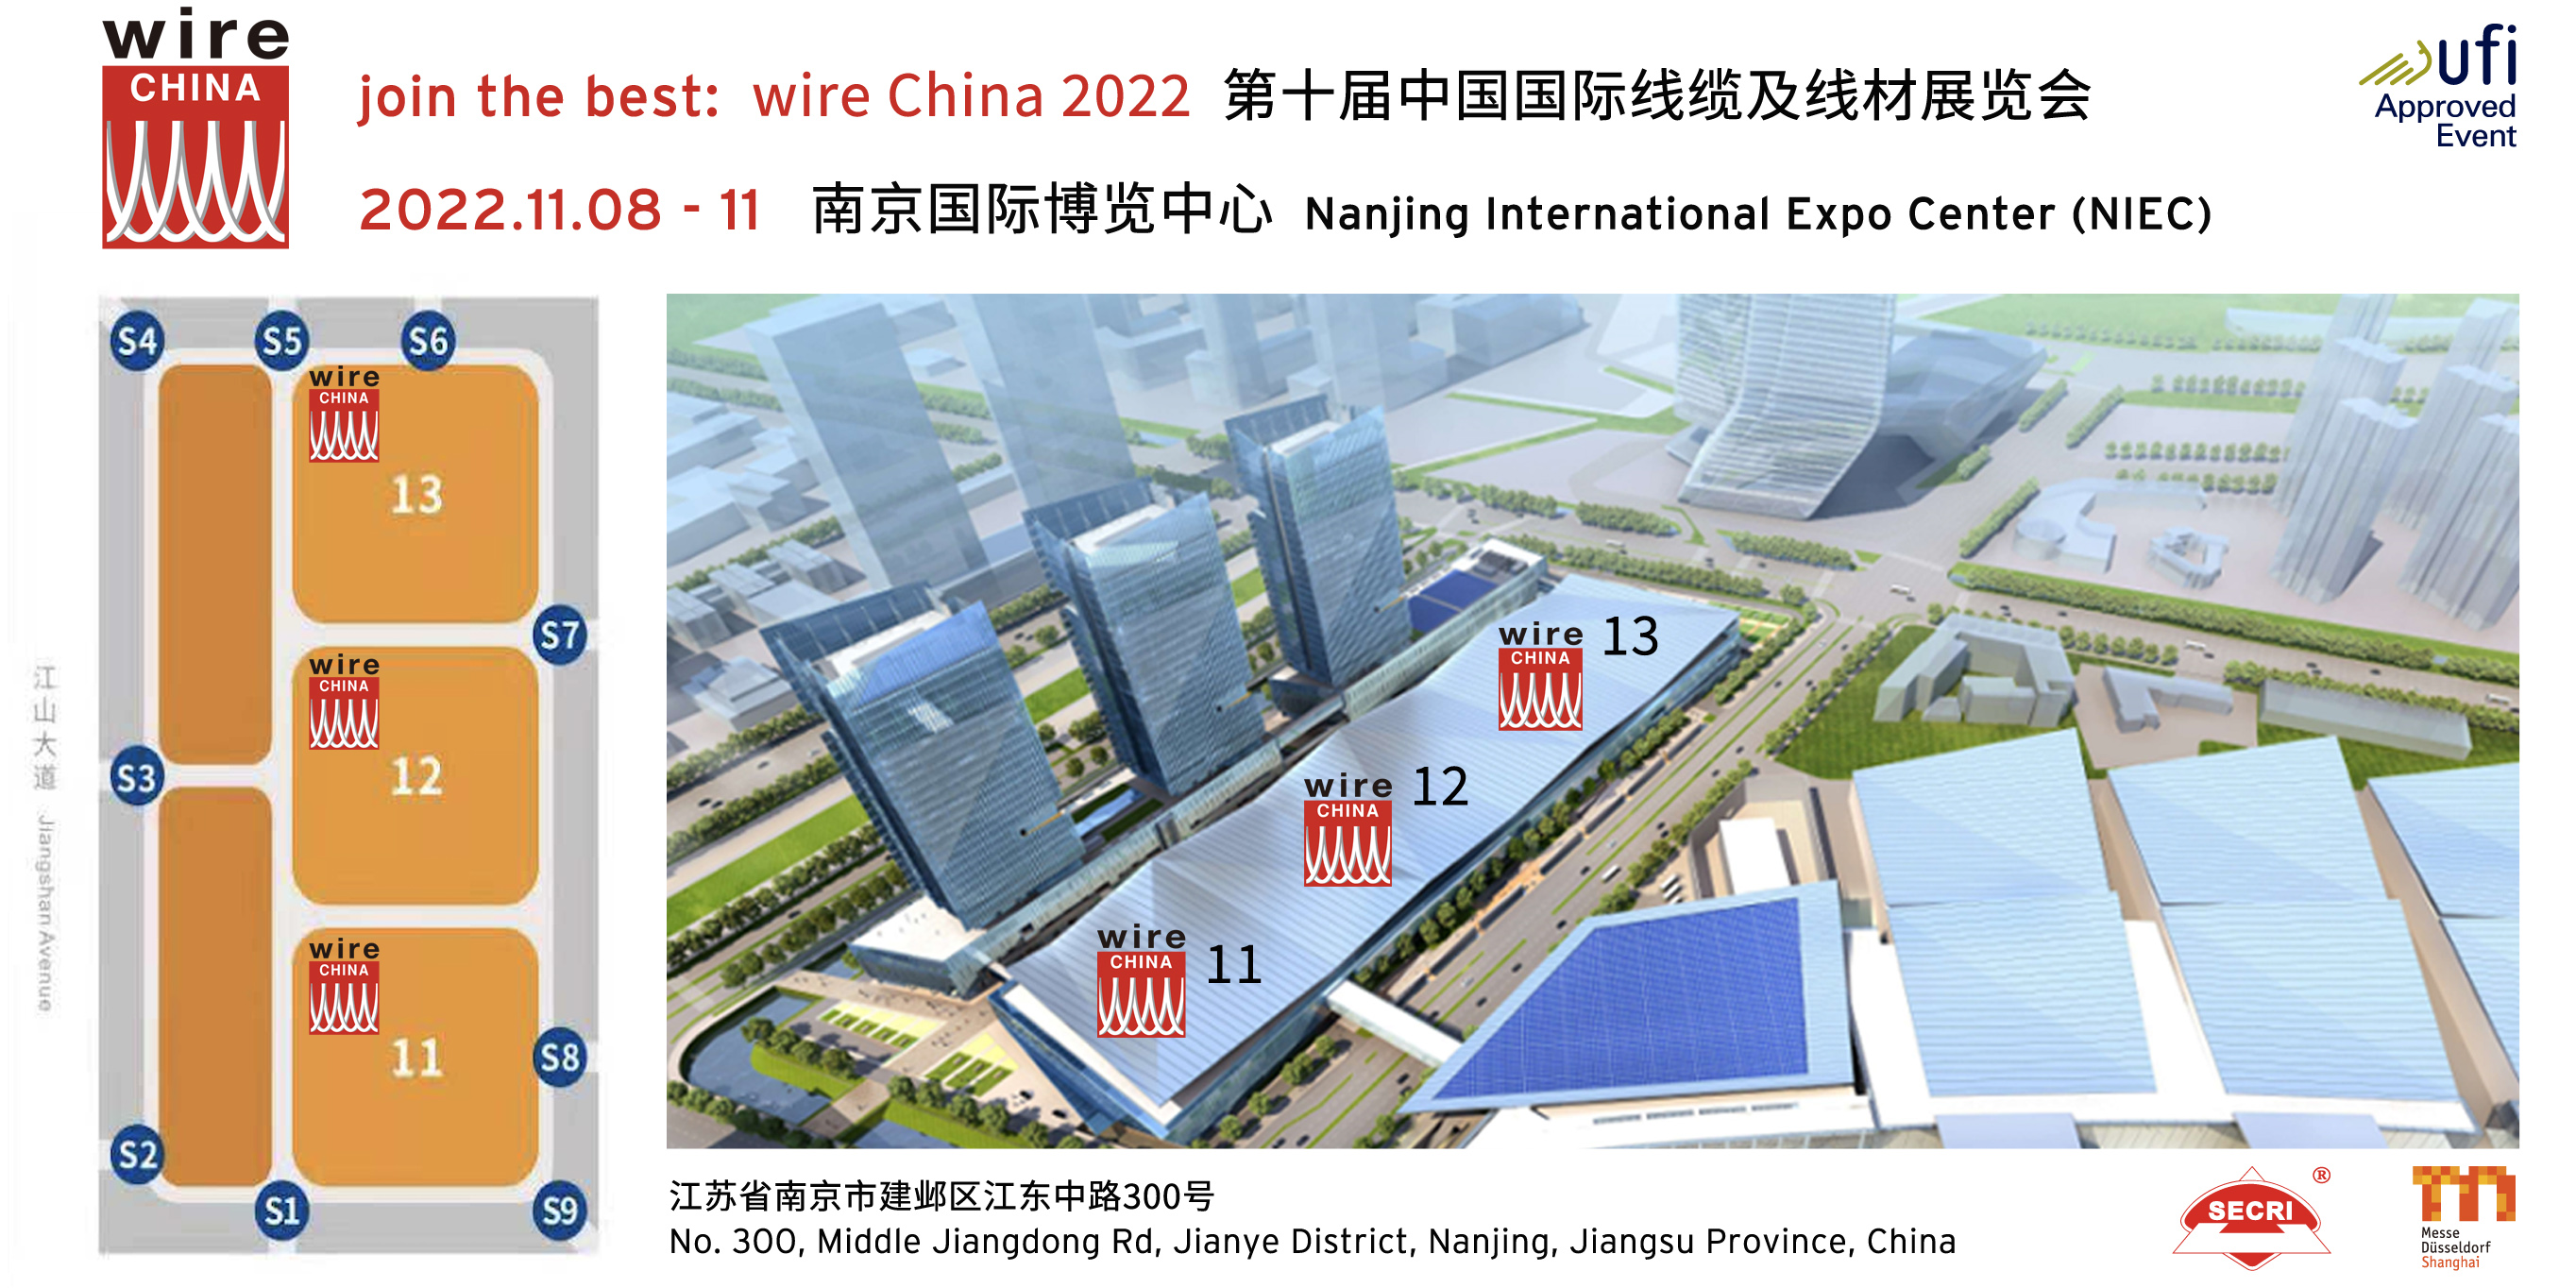 展馆分布图-wire China 2022-11月南京(1).jpg